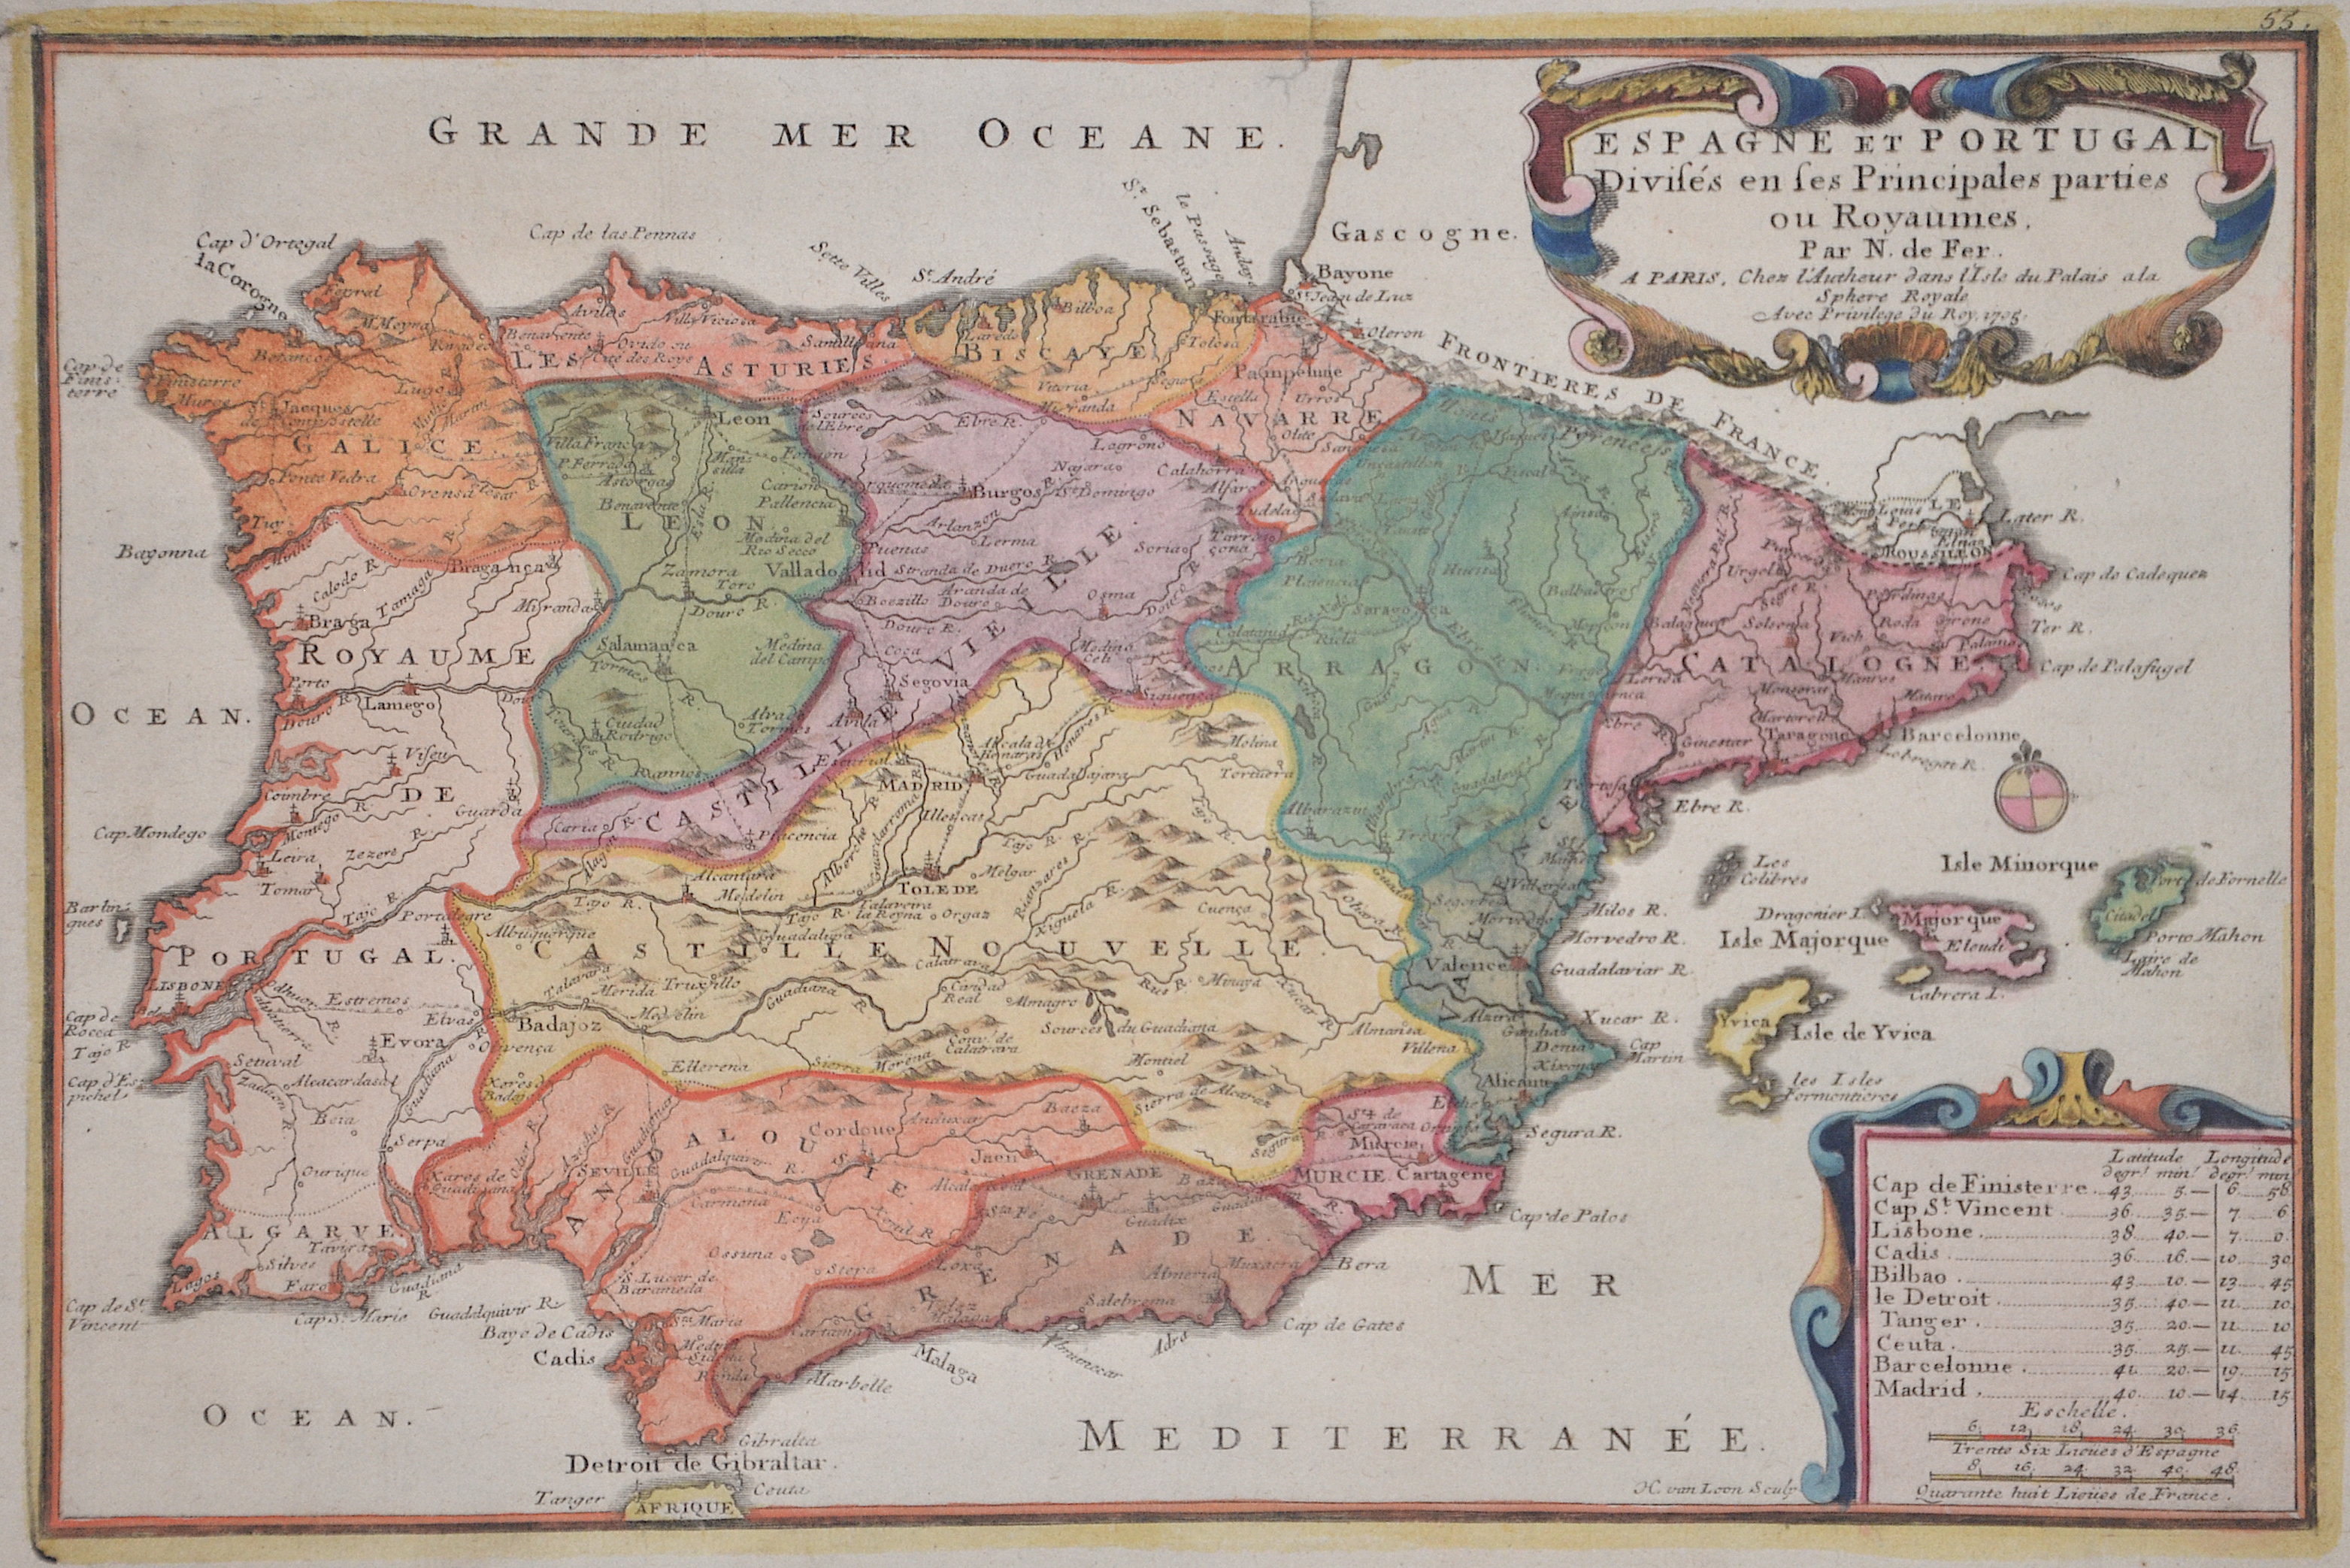 Fer, de Nicolas Espagne et Portugal Divises en ses Principales parties ou Royaumes.